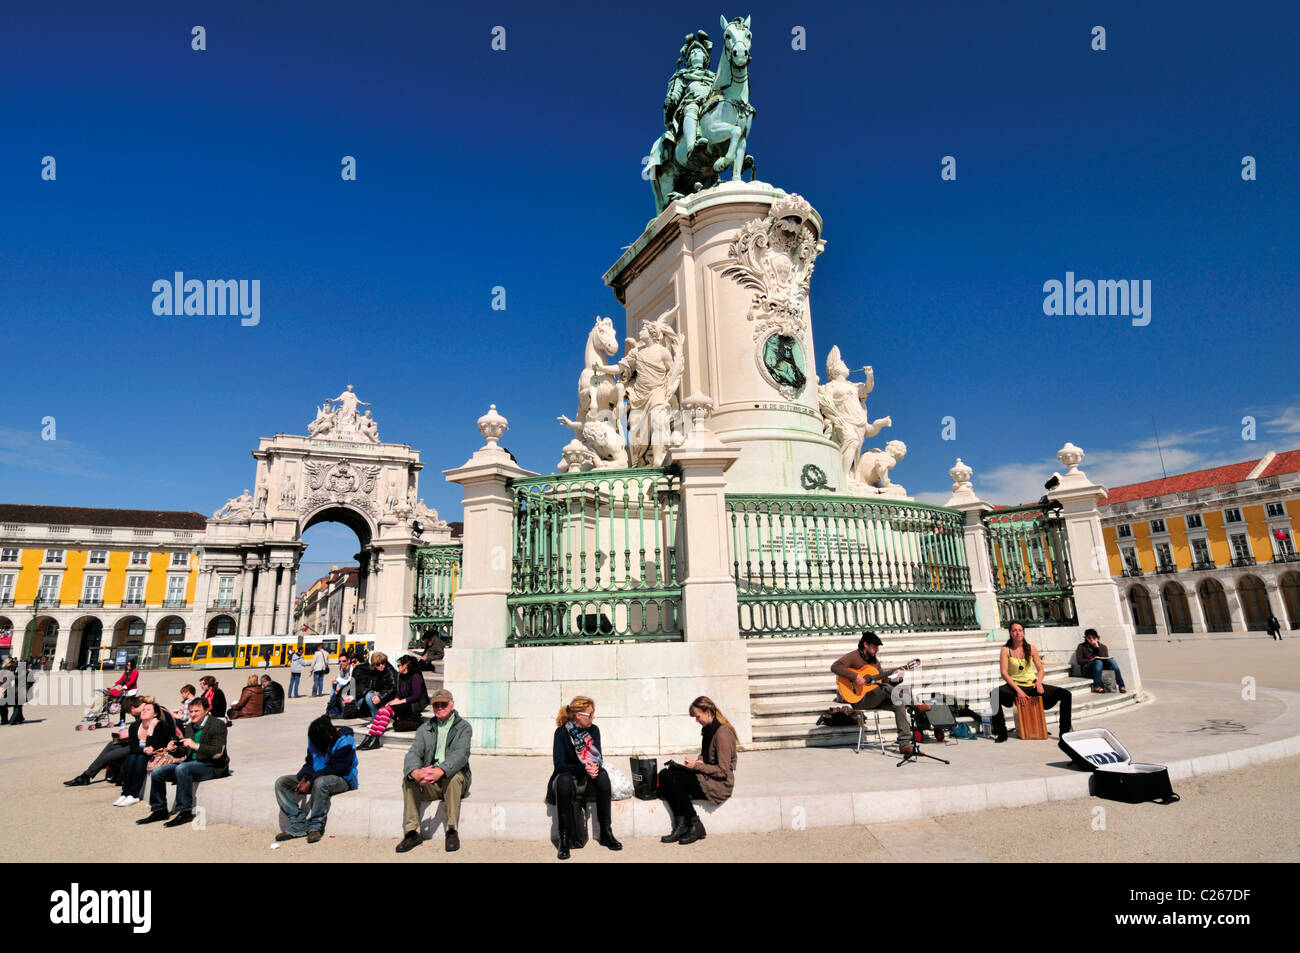 Portugal, Lisbon: Praça do Comercio and statue of king Dom José I. Stock Photo